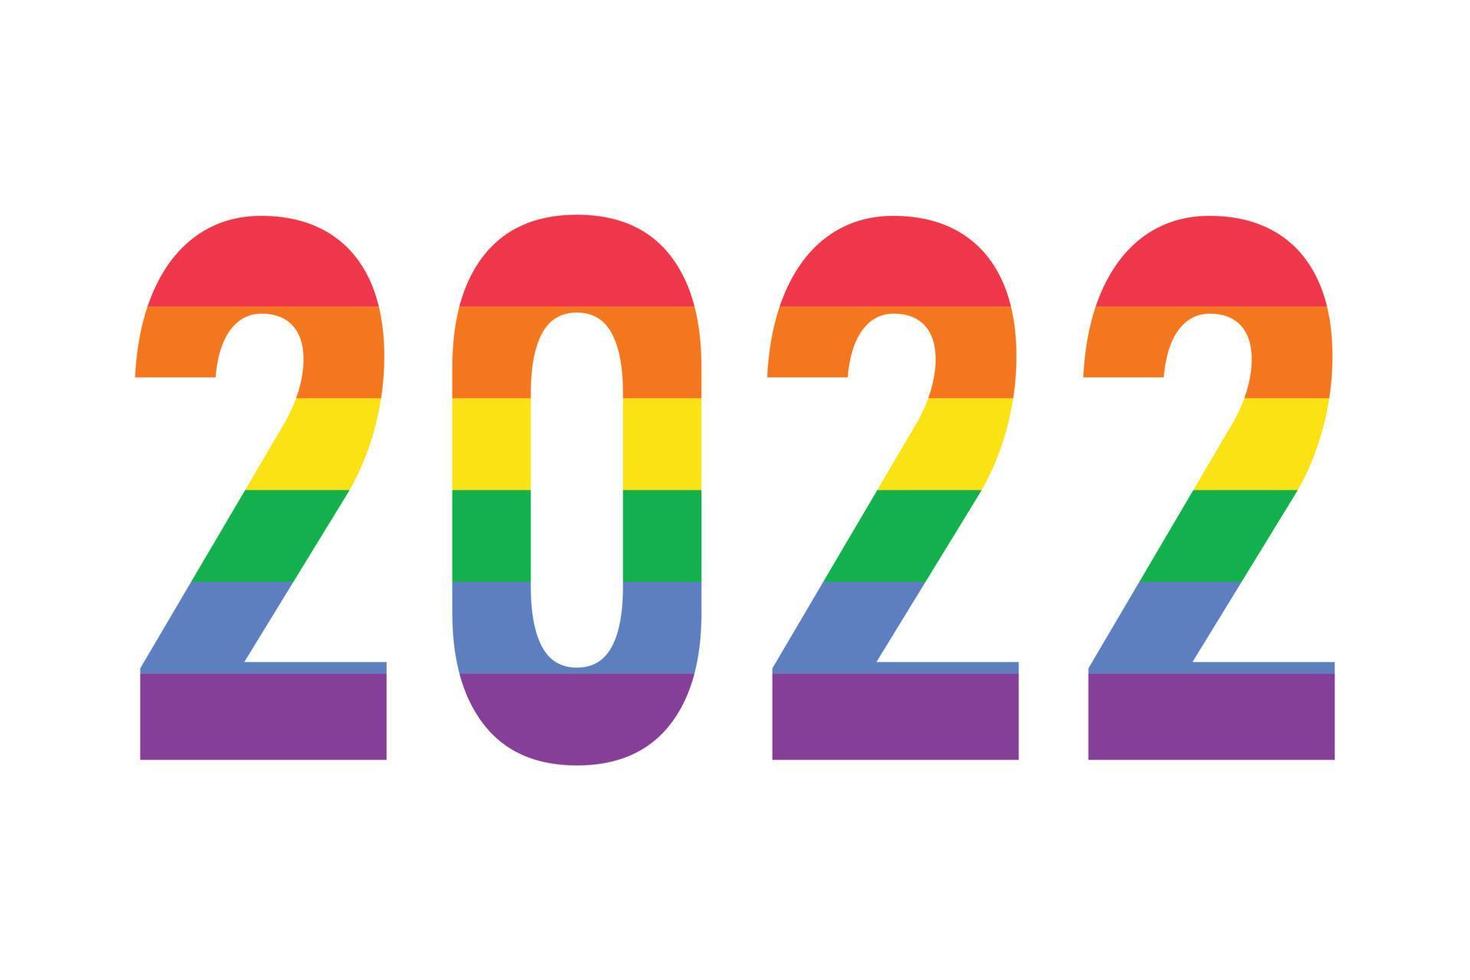 2022 in Regenbogenfarben der lgbtq-Flagge isoliert auf Weiß. Vektor-Logo-Symbol des LGBTQ-Gay-Pride-Monats, Geschichtsmonat vektor